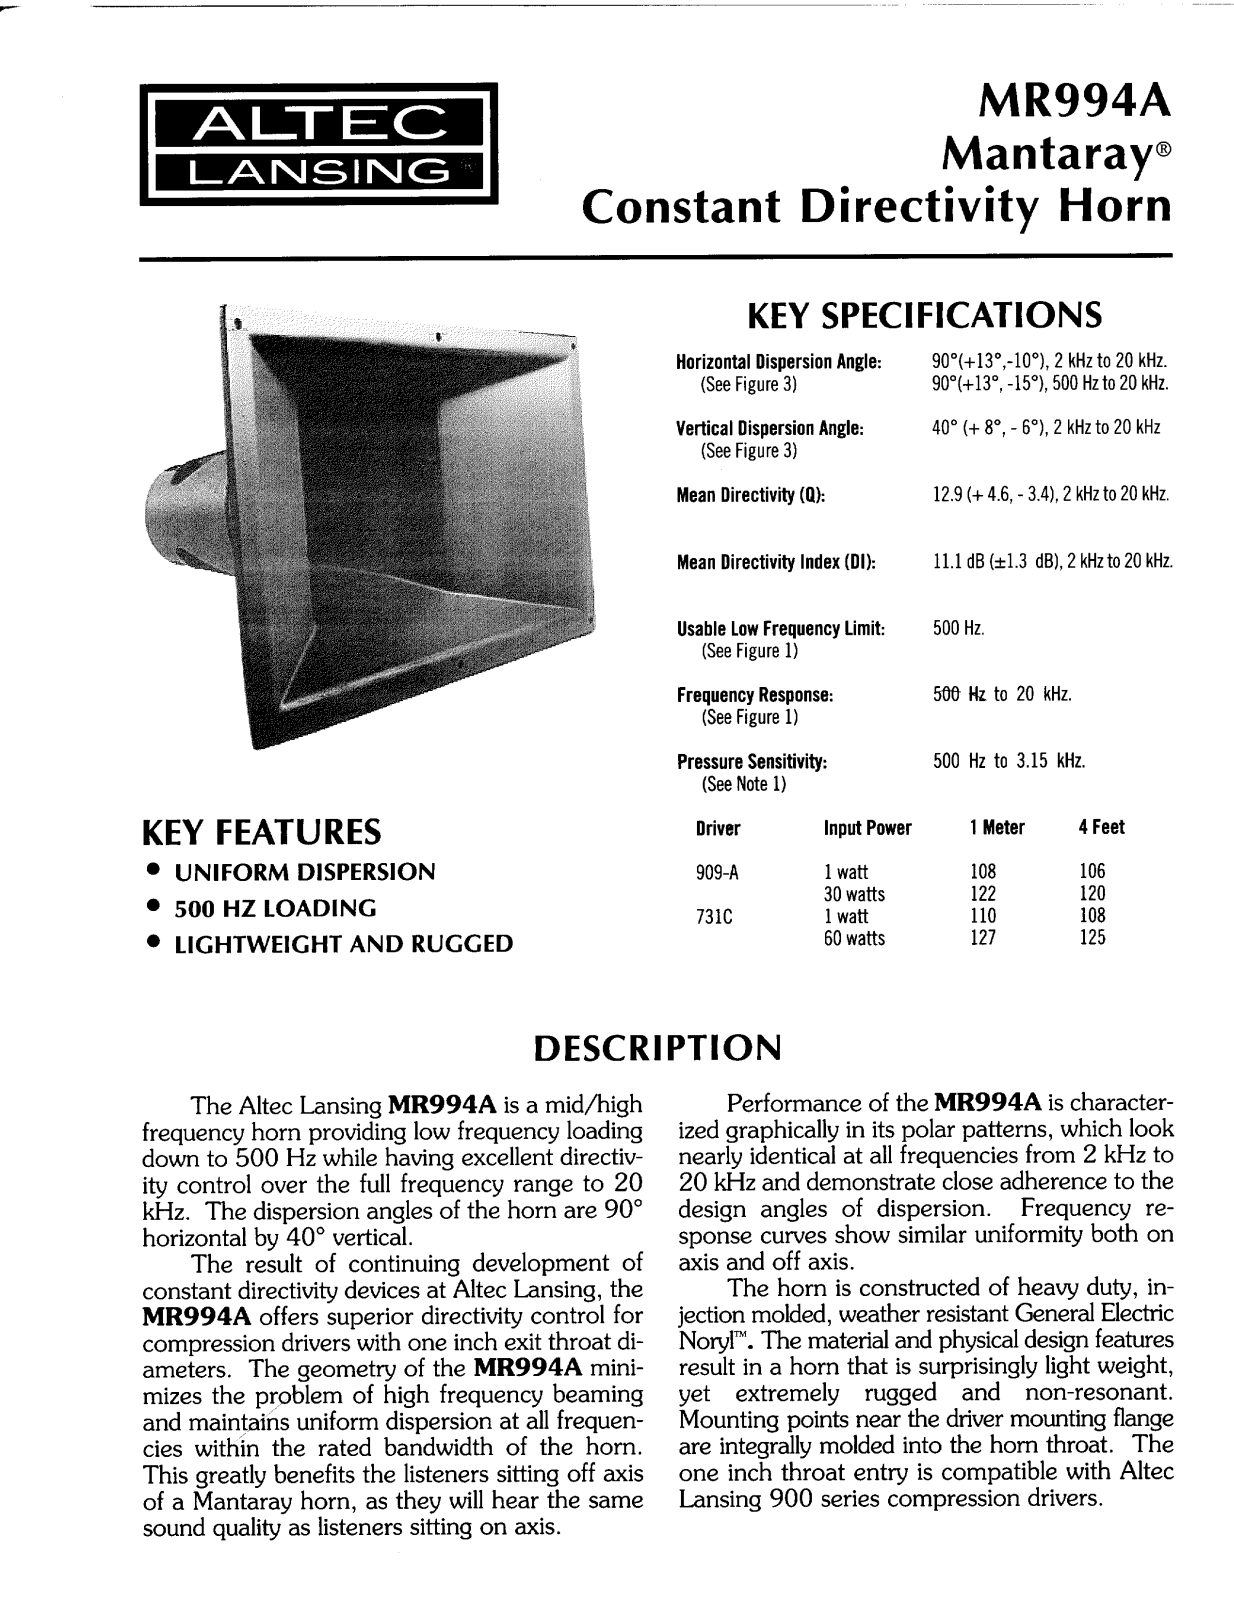 Altec lansing MR994A HF HORN User Manual